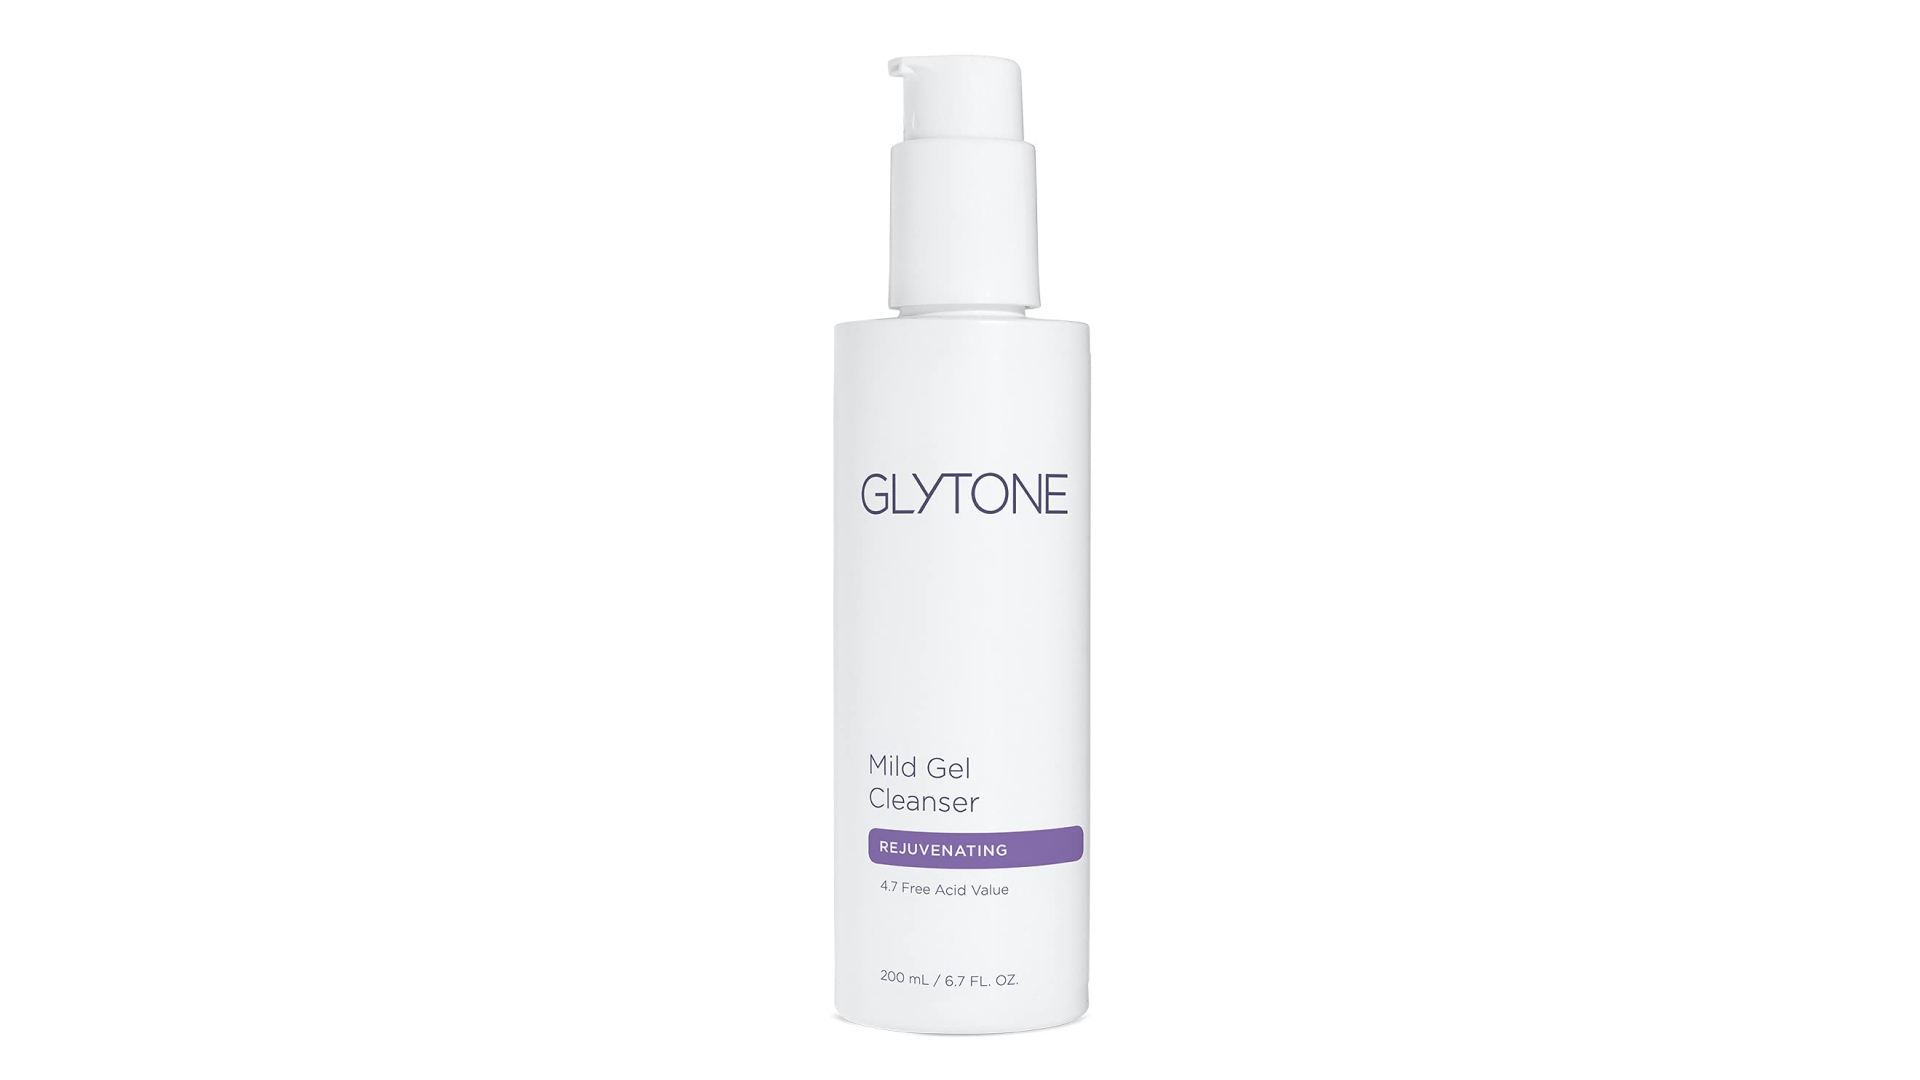 Glytone cleanser